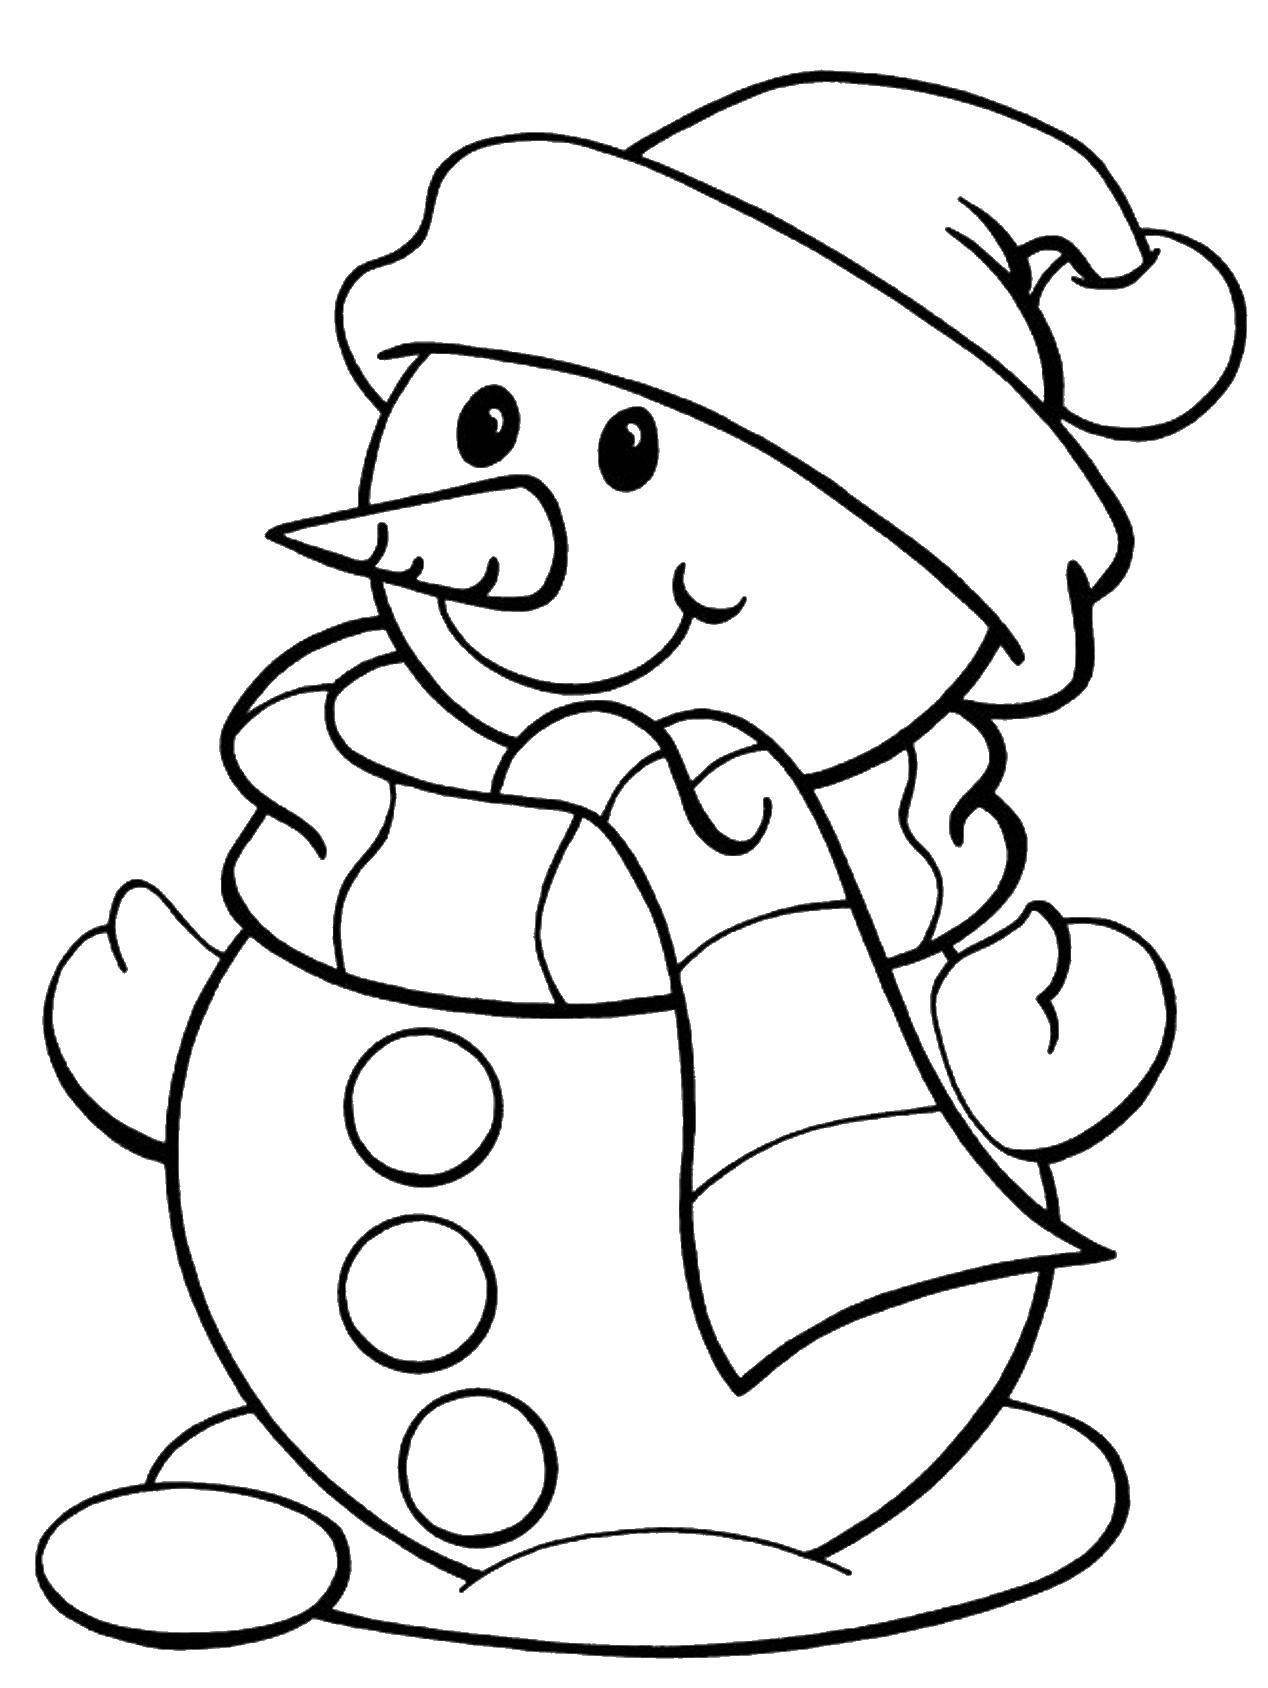 Раскраски для детей Зима, зимушка раскраски для школьников  Снеговик